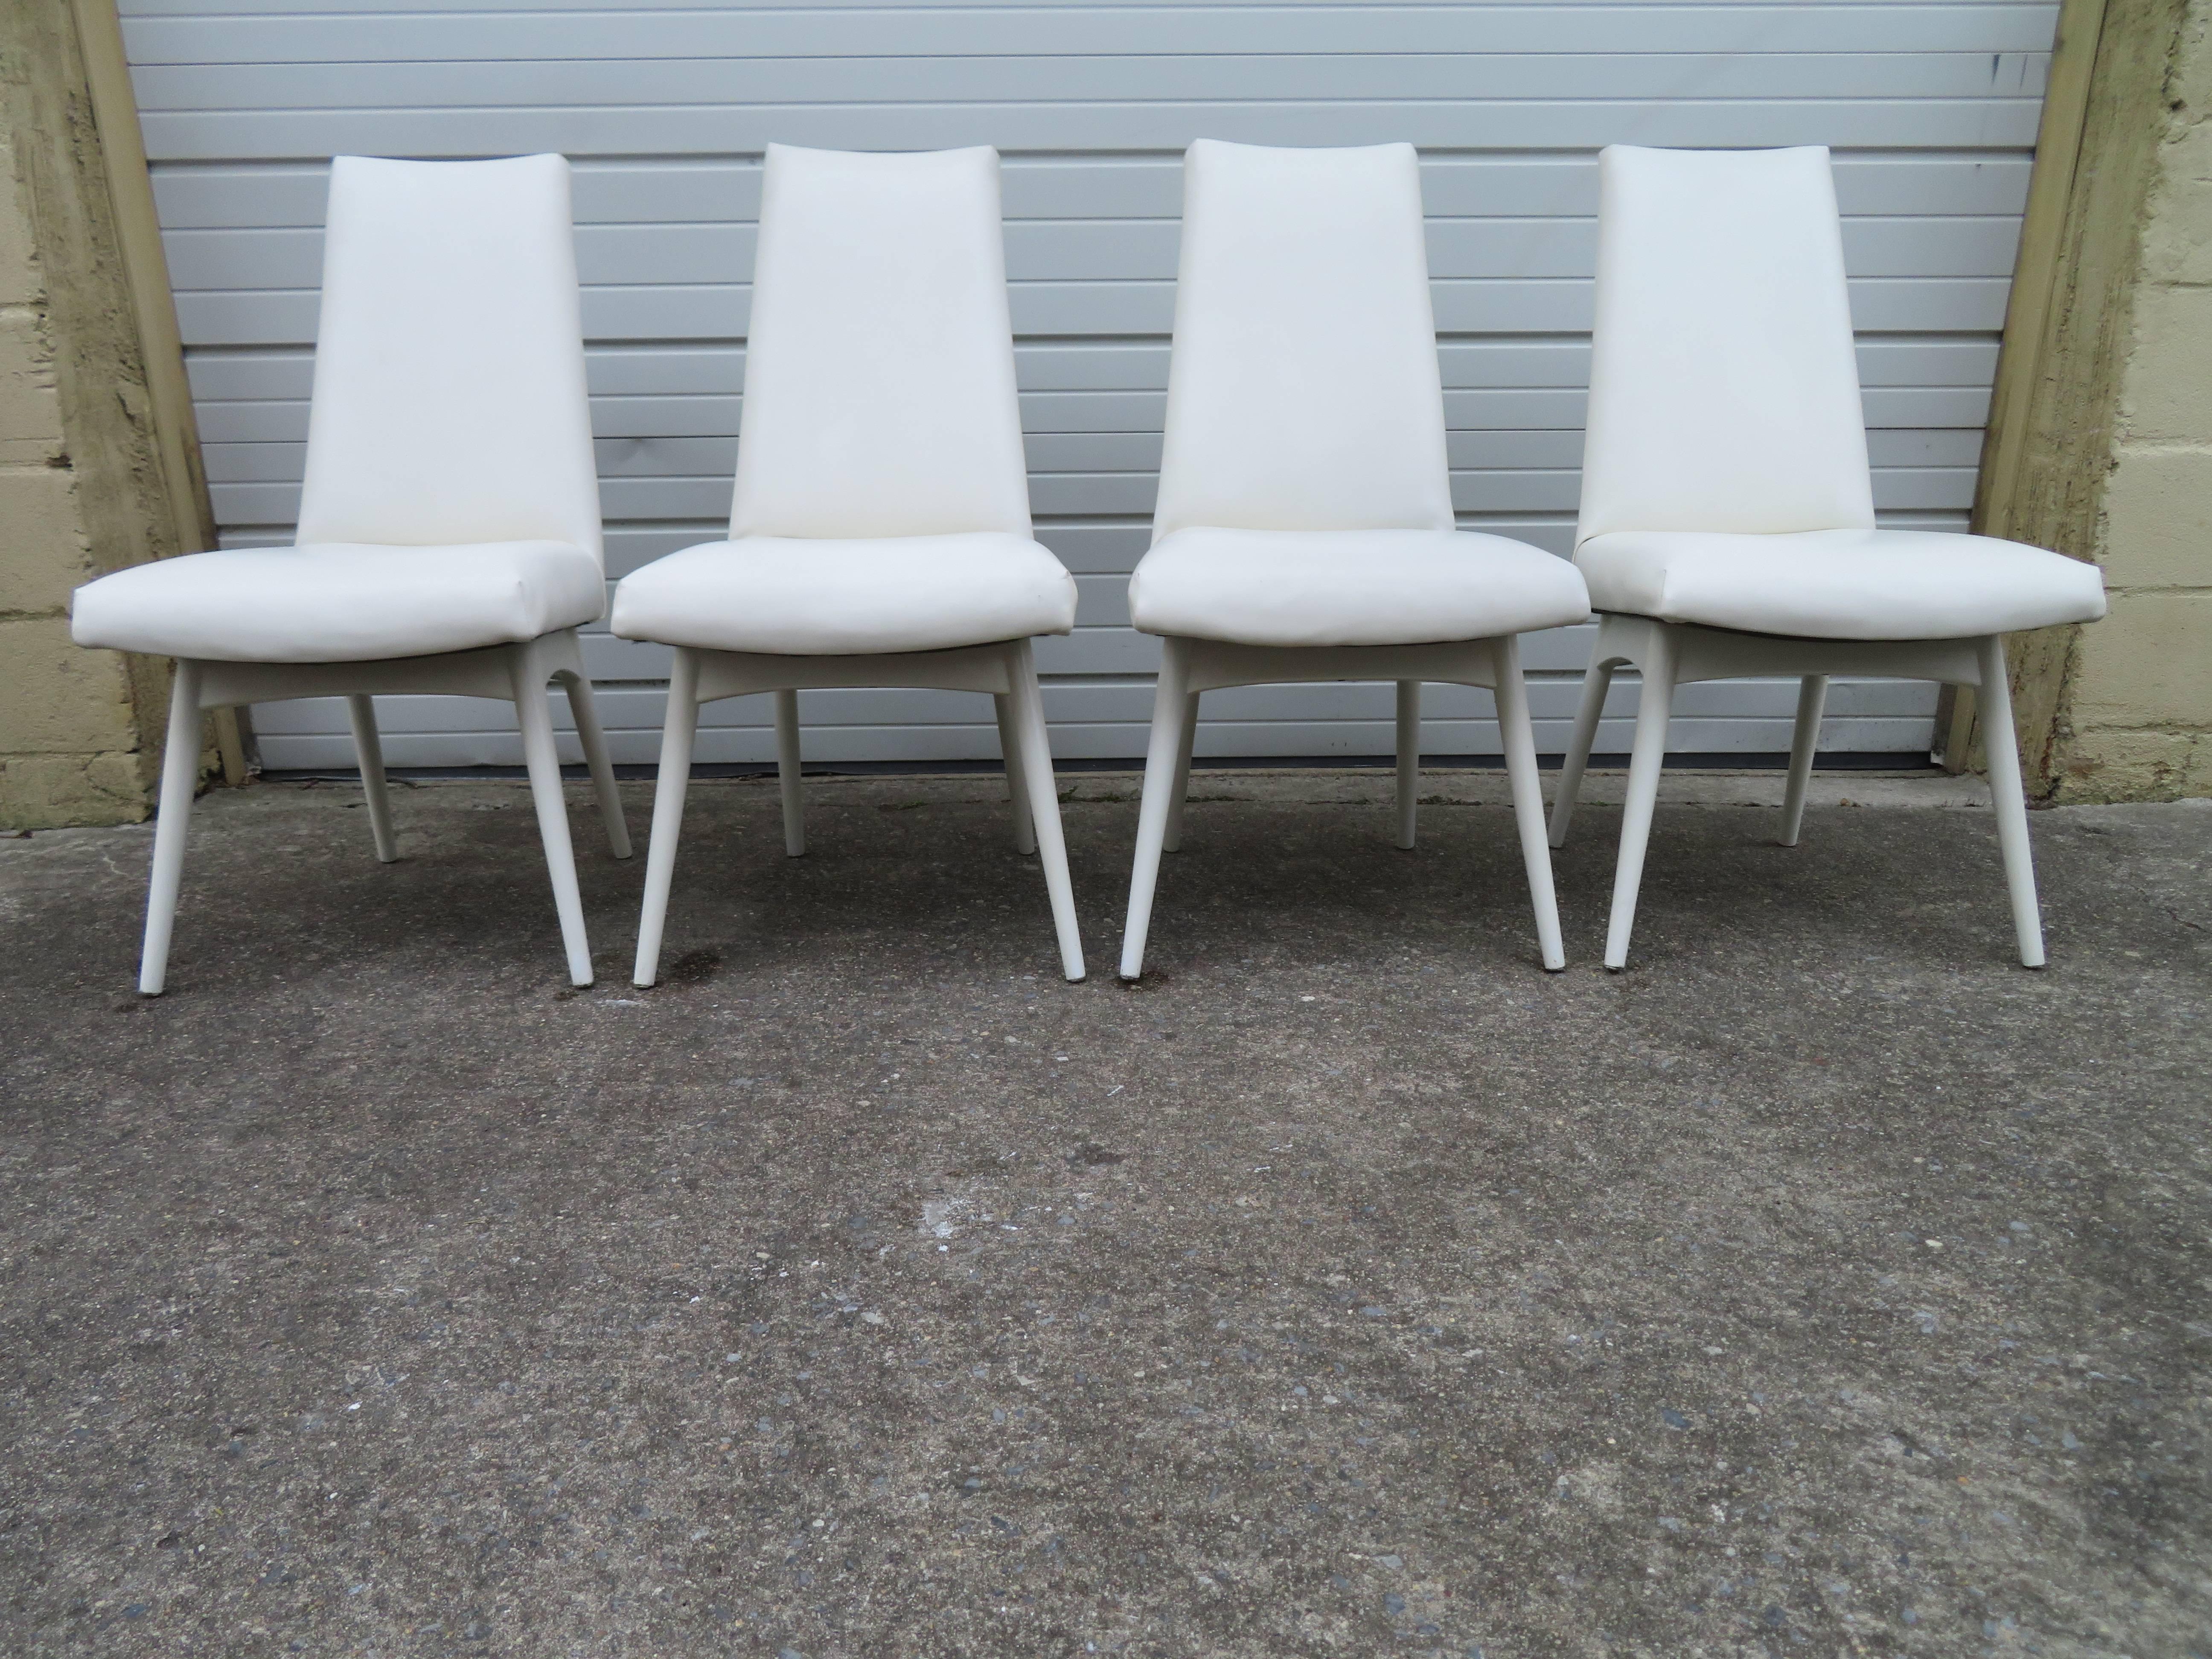 Wunderschöner Satz von vier Adrian Pearsall Esszimmerstühlen, weiß lackiert. Diese Stühle behalten ihre ursprüngliche weiß lackierte Oberfläche in sehr schönem Zustand - eine sehr seltene Farbe. Auch das weiße Kunstleder ist Vintage und sieht immer